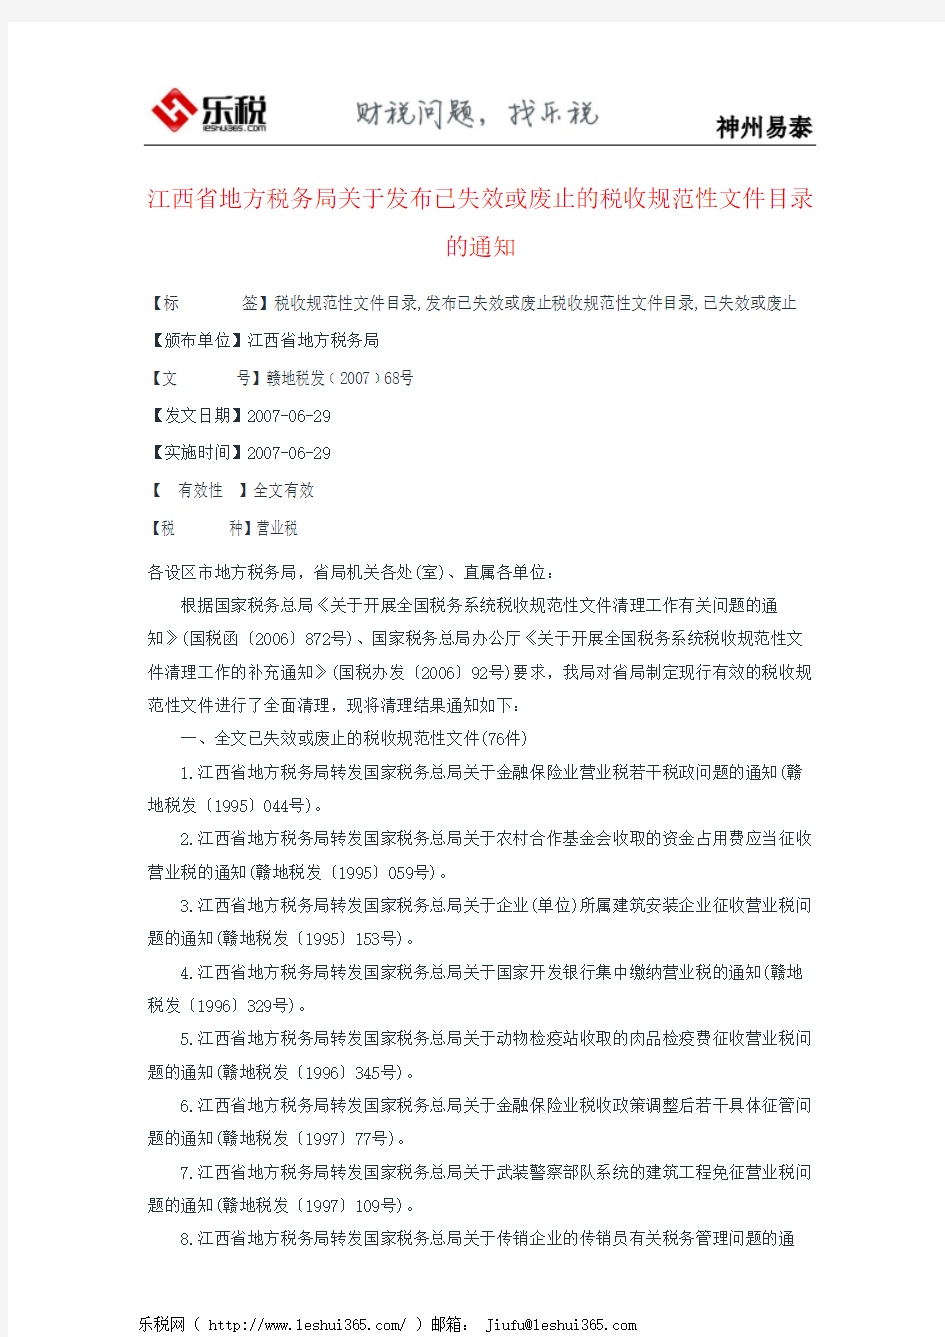 江西省地方税务局关于发布已失效或废止的税收规范性文件目录的通知